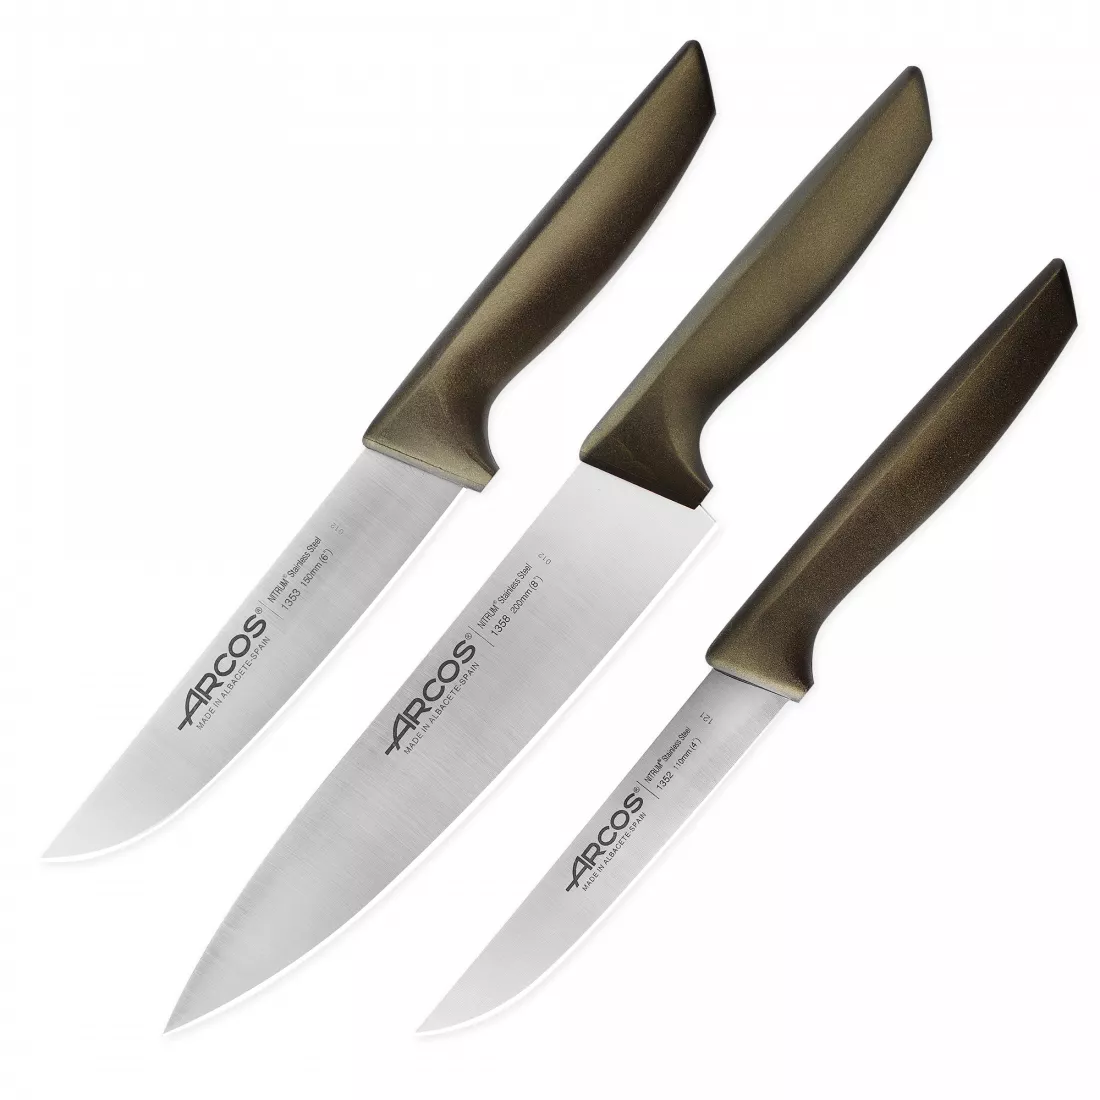 ARCOS Набор кухонных ножей, в коробке, 3 шт. (110 мм, 150 мм, 200 мм,) коричневые ручки